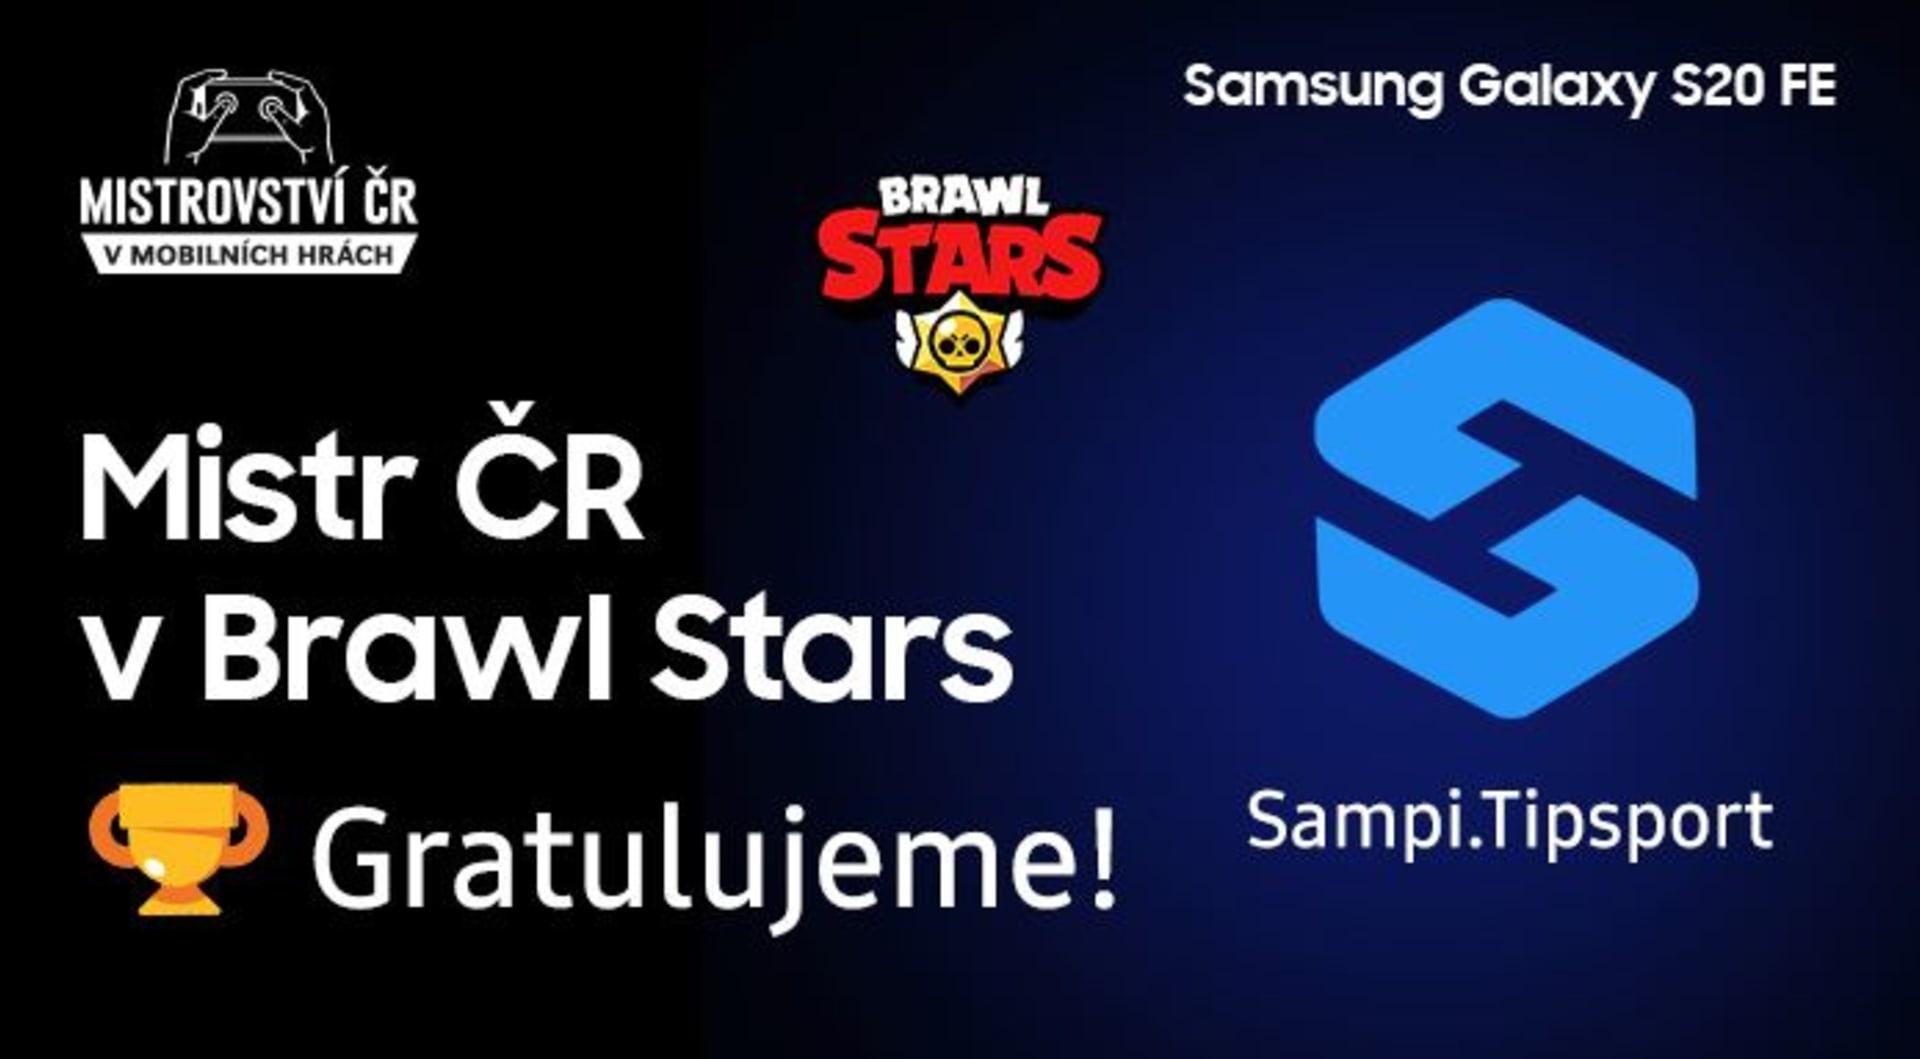 Samsung MČR v mobilních hrách 2020 Brawl Stars je u konce